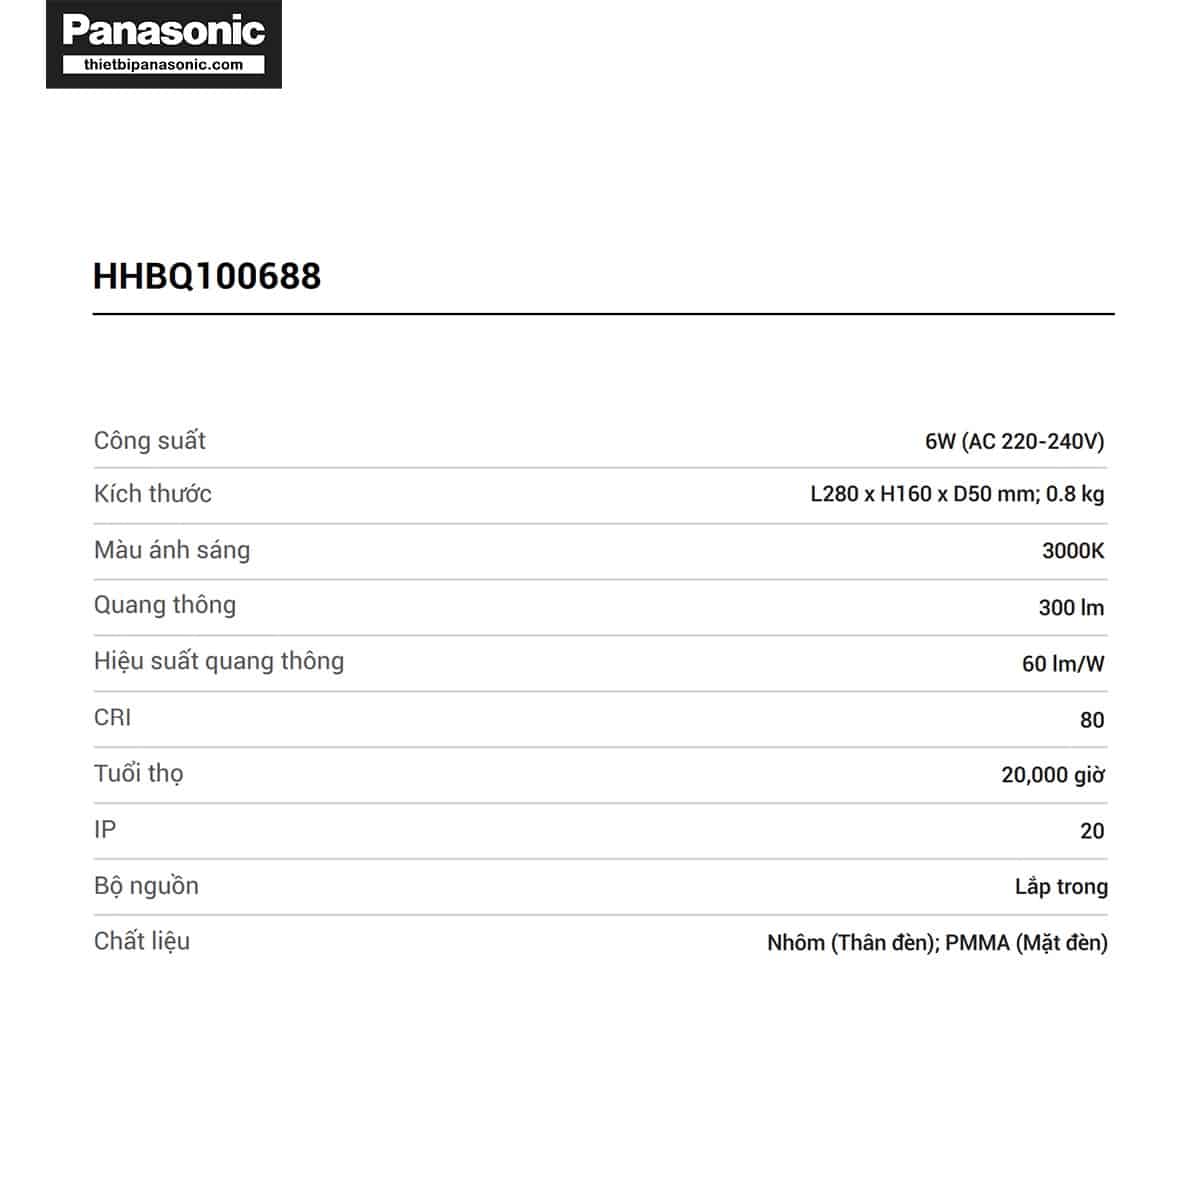 Thông số kỹ thuật của Đèn tường Panasonic HHBQ100688